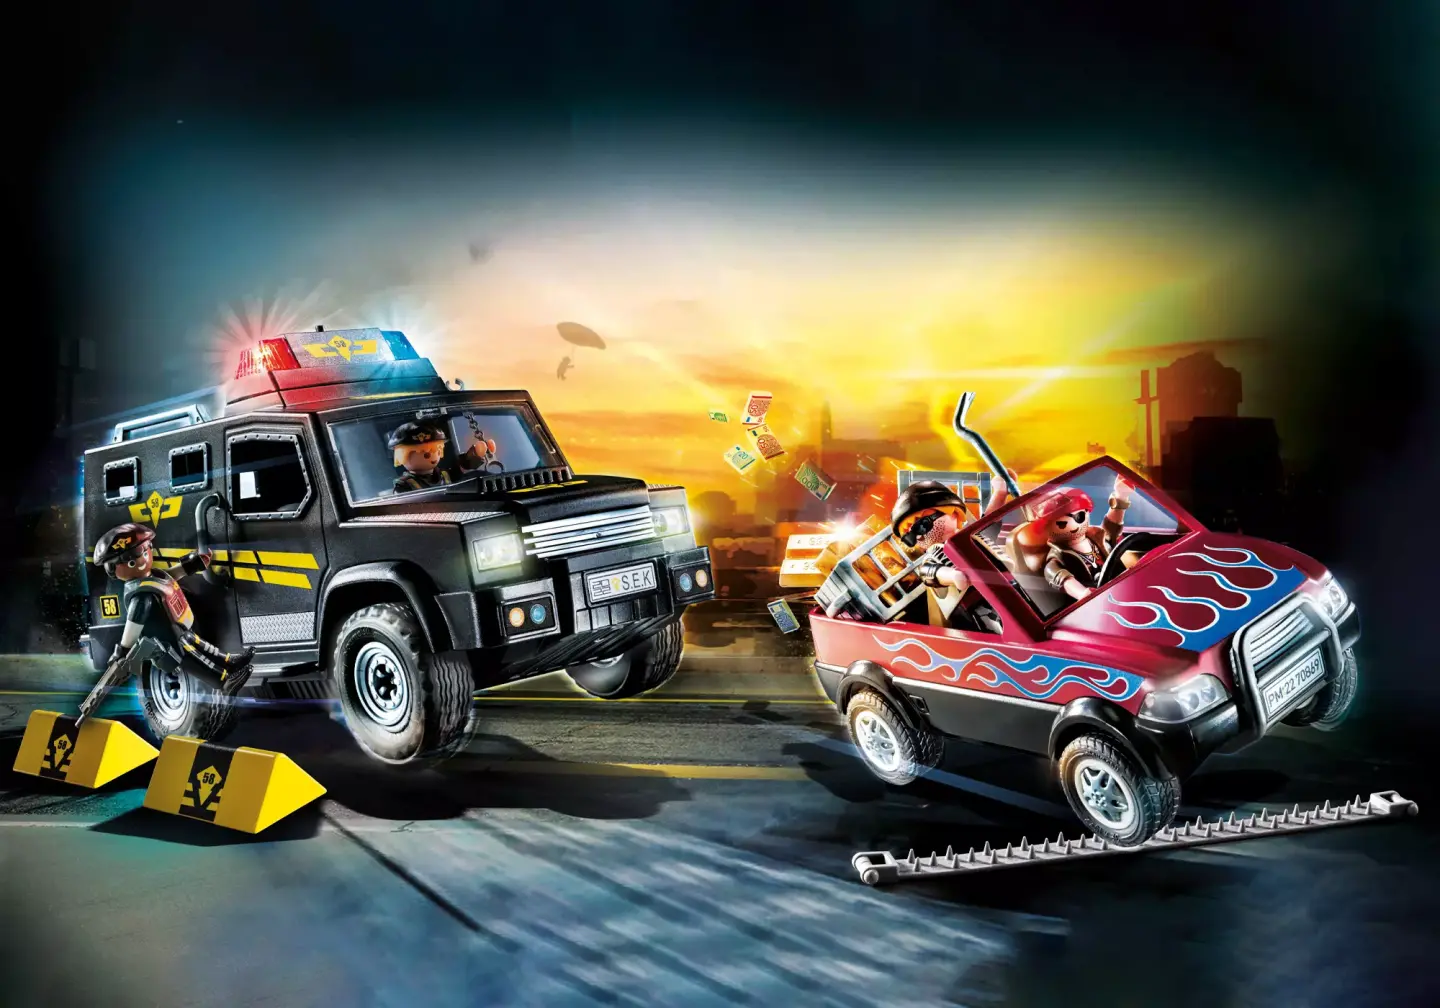 Playmobil City Action 70823 Duo Secouriste et policière